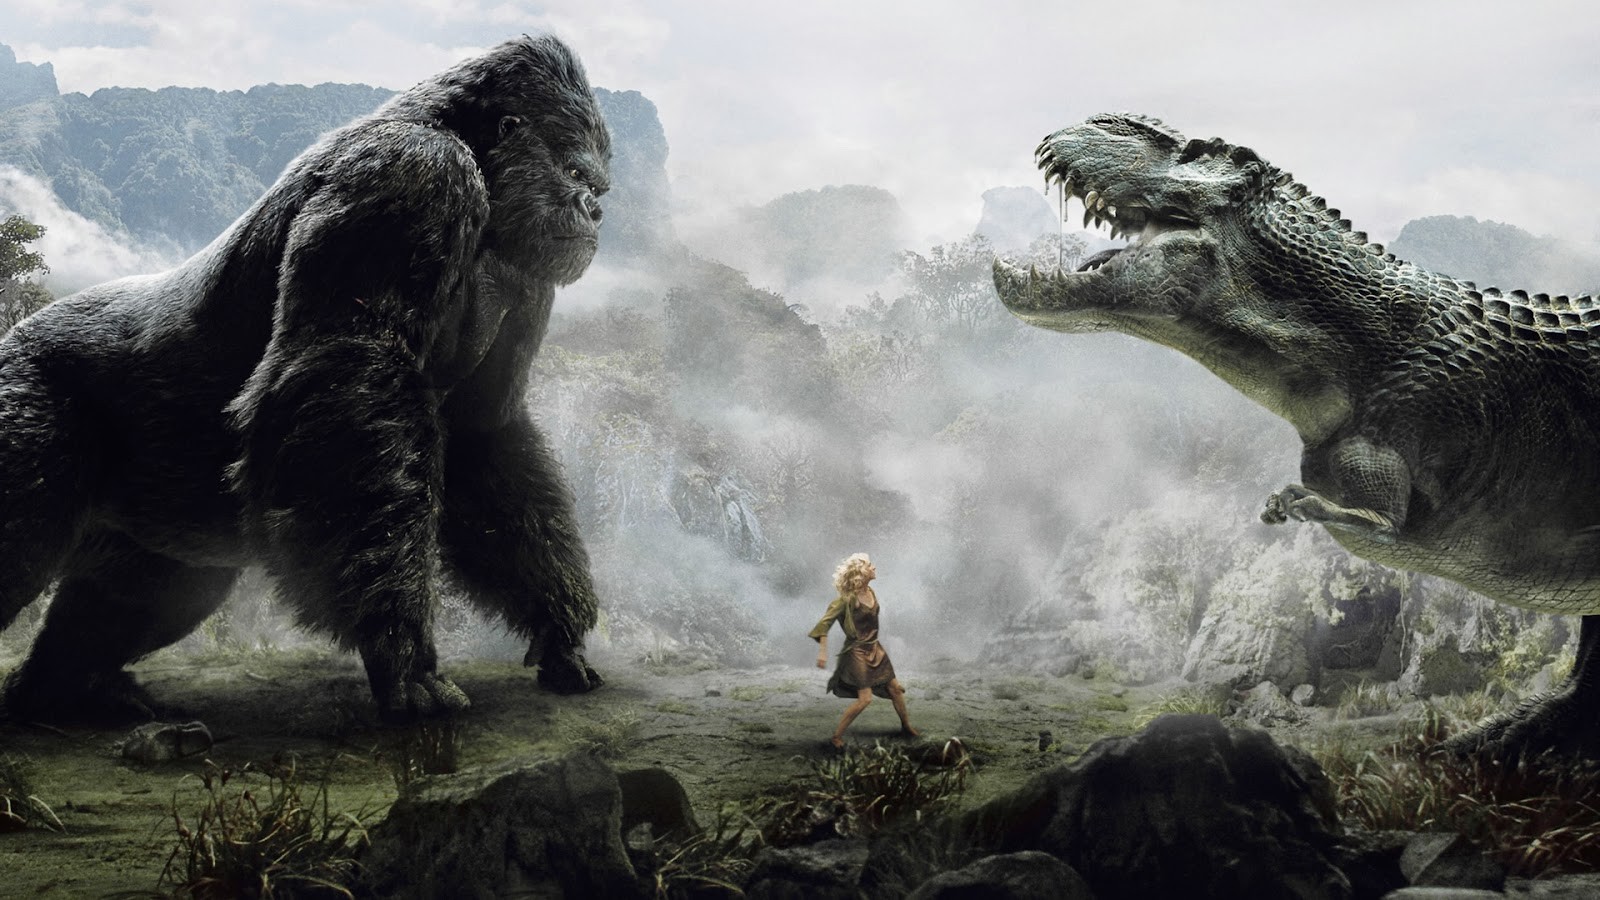 Assistir Kong: A Ilha da Caveira Filme Competo Online 2017